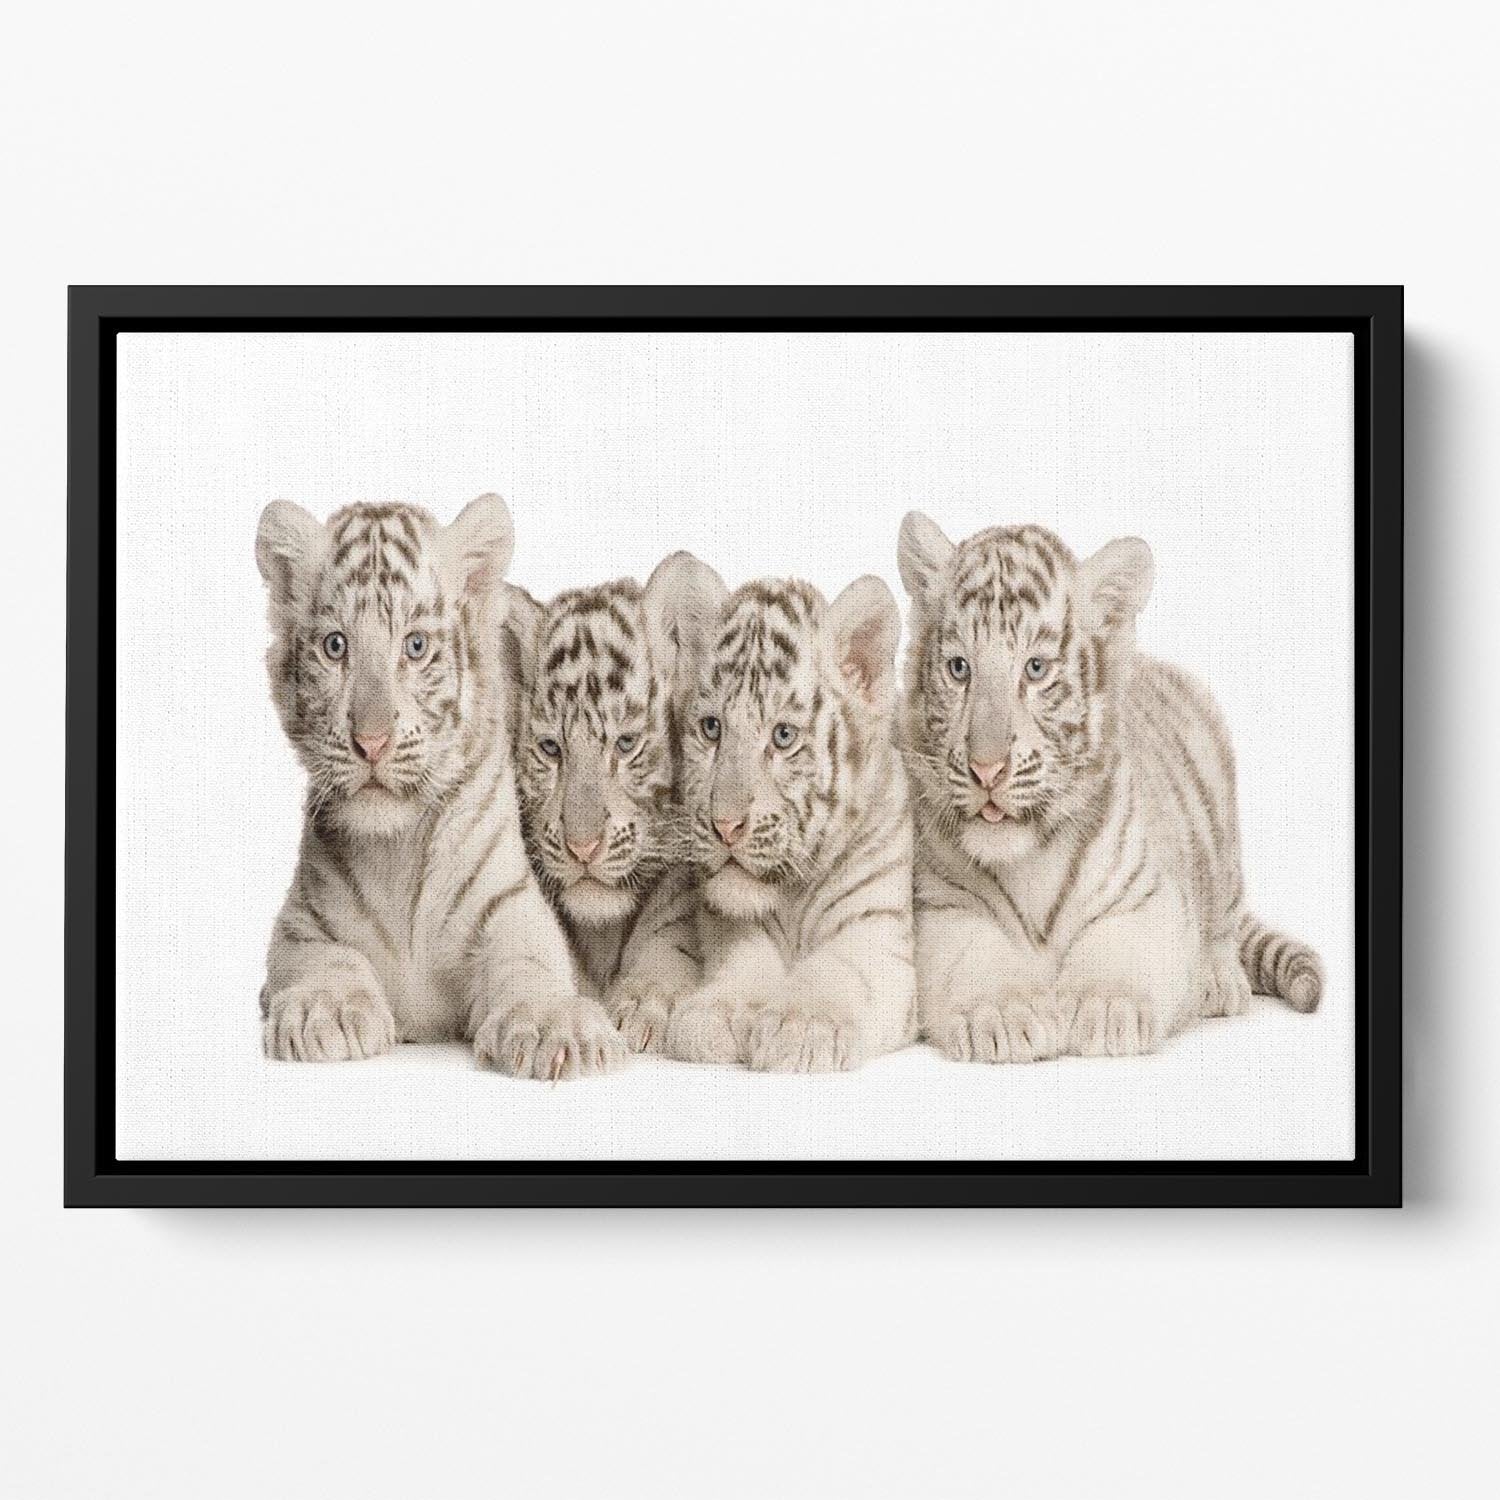 White Tiger cubs 2 months Floating Framed Canvas - Canvas Art Rocks - 2